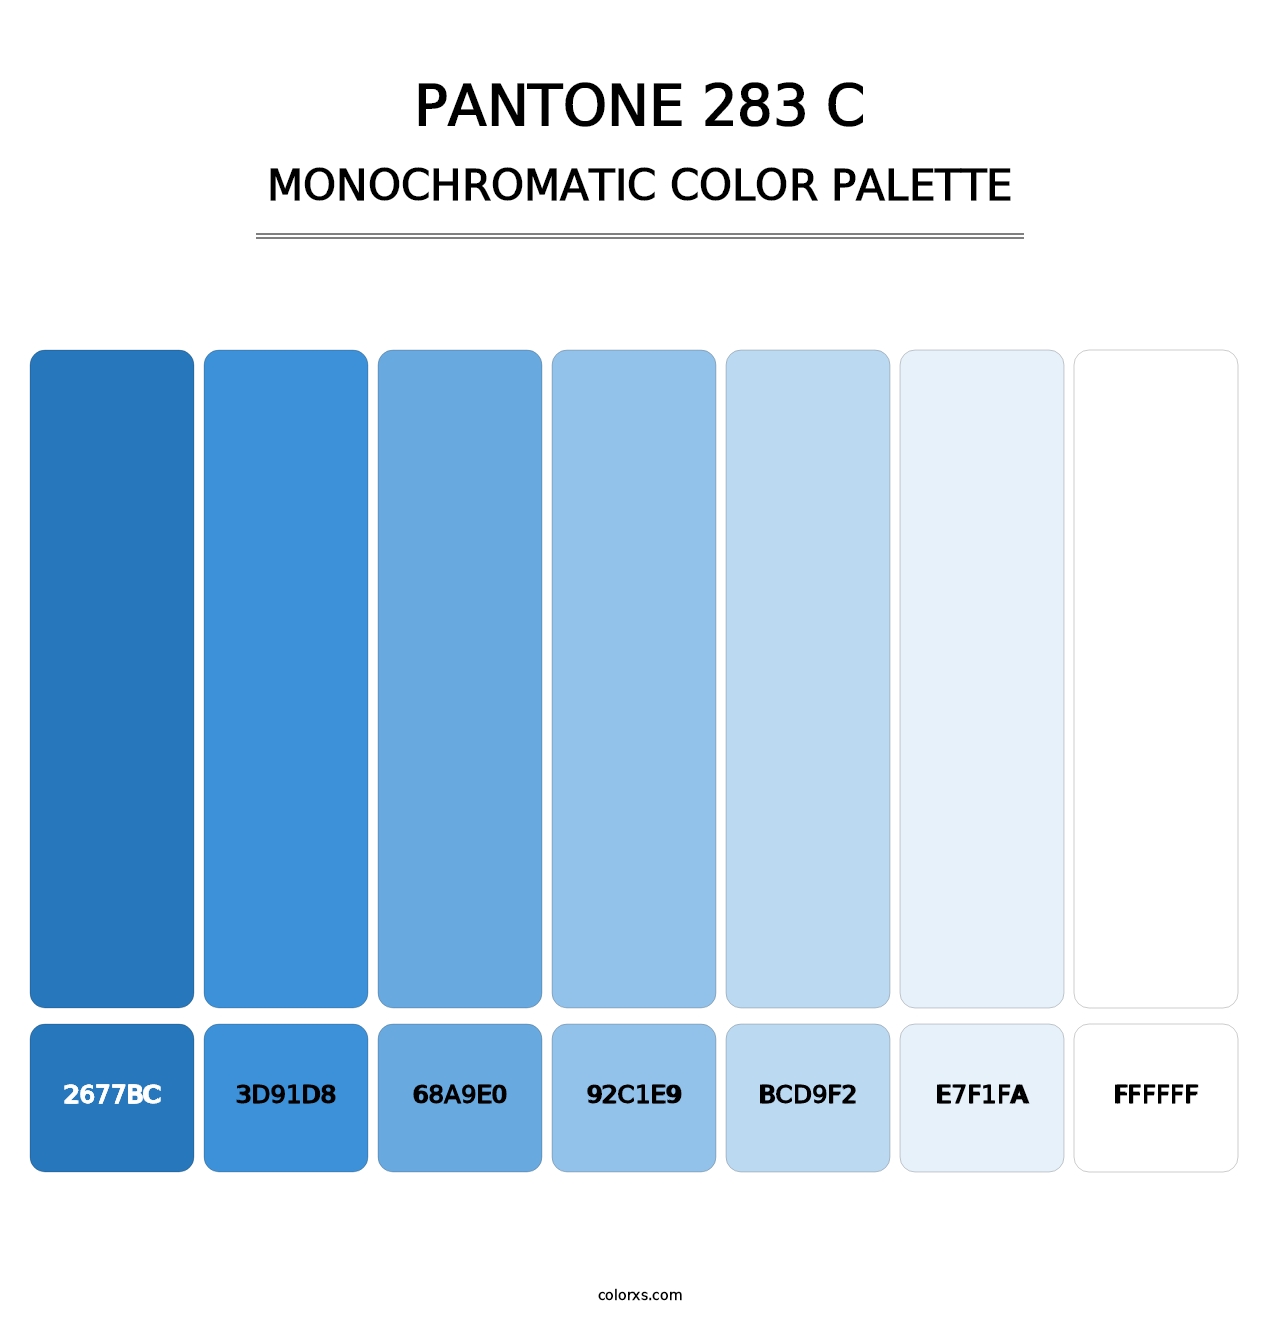 PANTONE 283 C - Monochromatic Color Palette